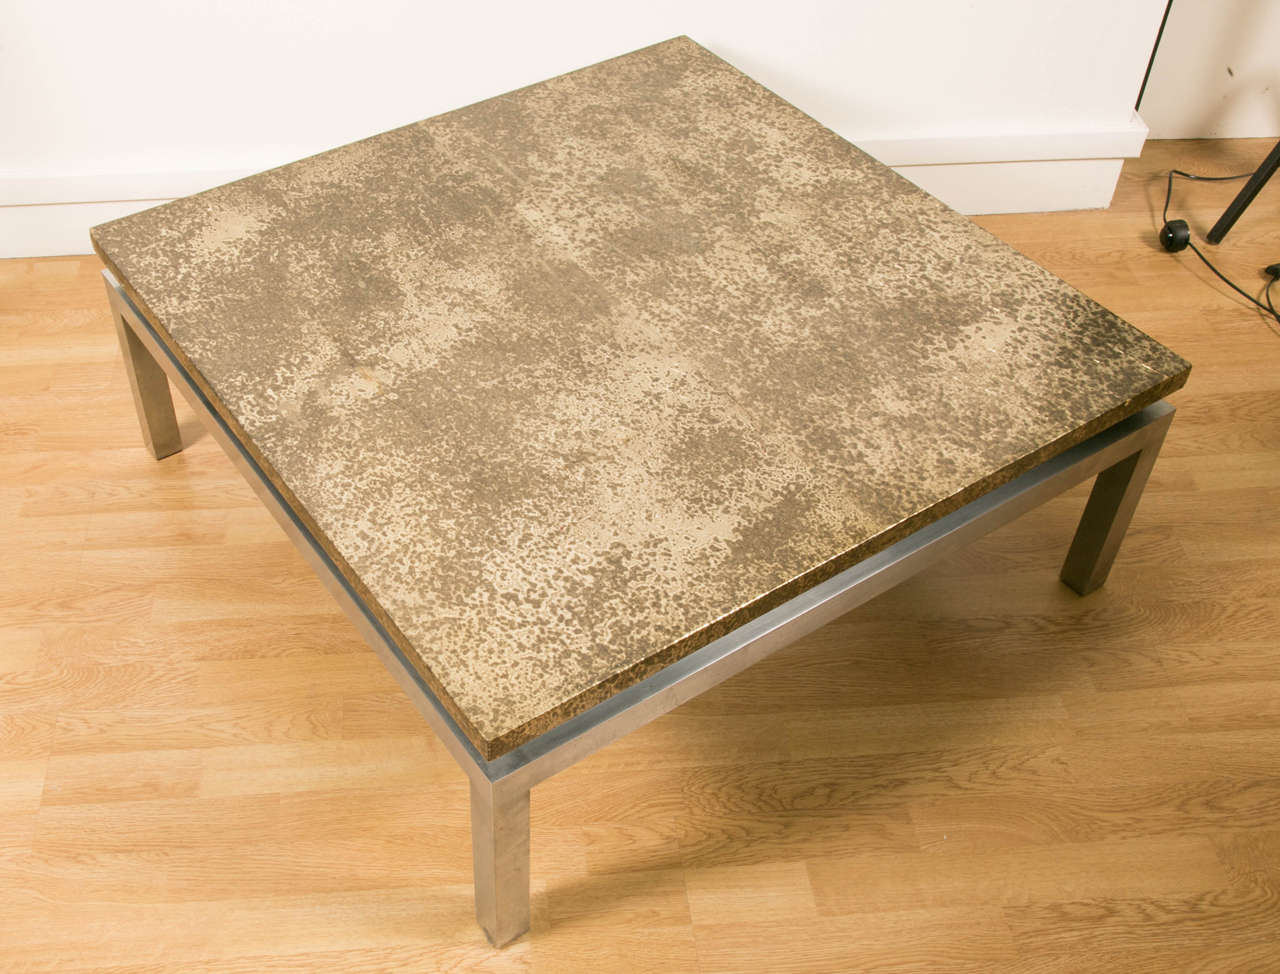 Grande table basse carrée avec base en acier inoxydable section carrée. Dessus recouvert d'une feuille de laiton oxydée à l'acide recouverte d'une laque transparente craquelée comme l'ancienne laque chinoise. Travail des années 1970.